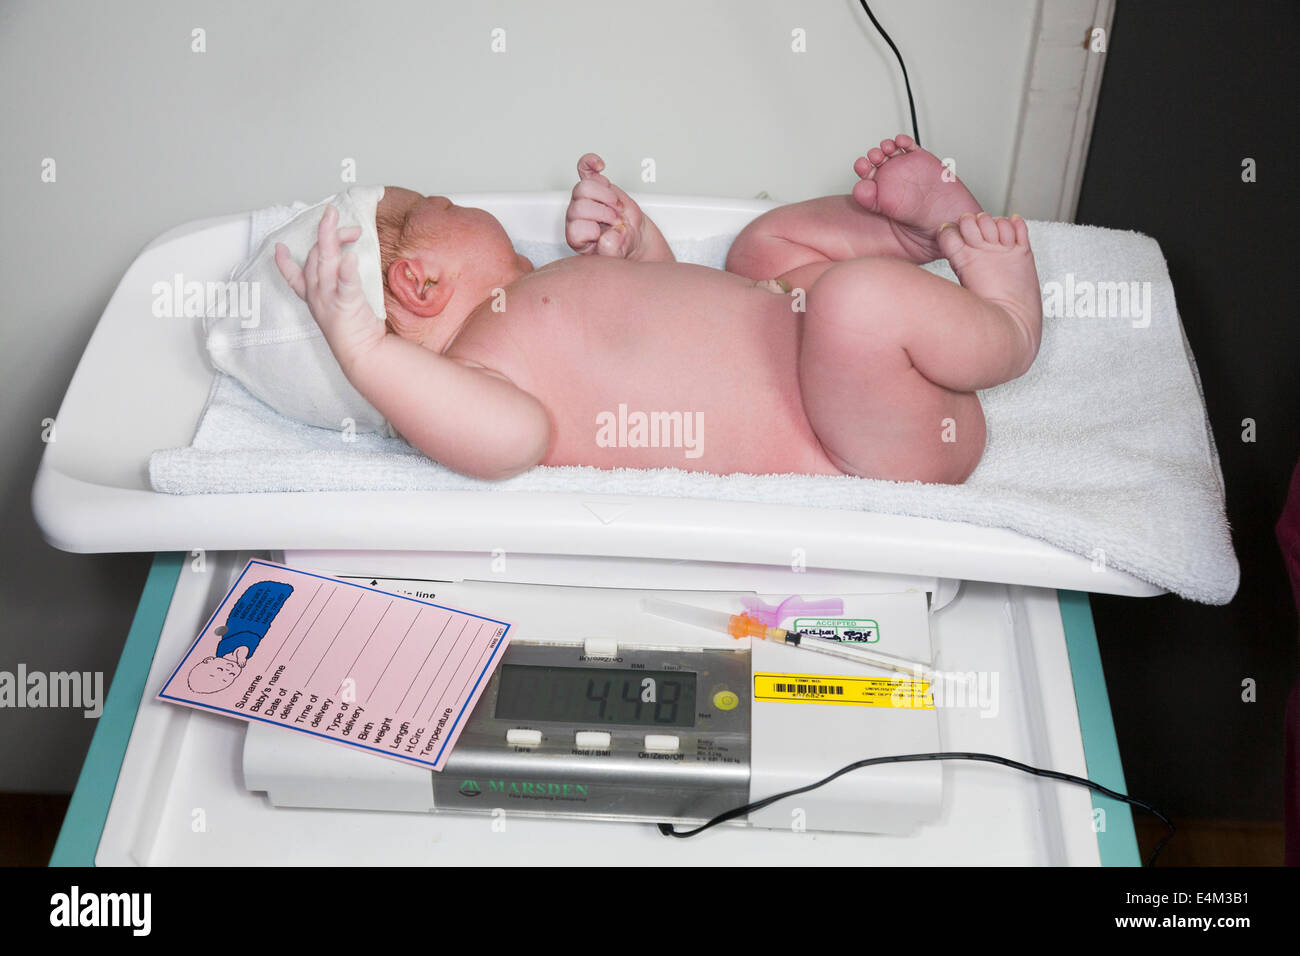 Pesant un nouveau-né / bébé nouveau-né avec une balance / échelle peu après l'accouchement / l'accouchement dans un hôpital du NHS. Banque D'Images